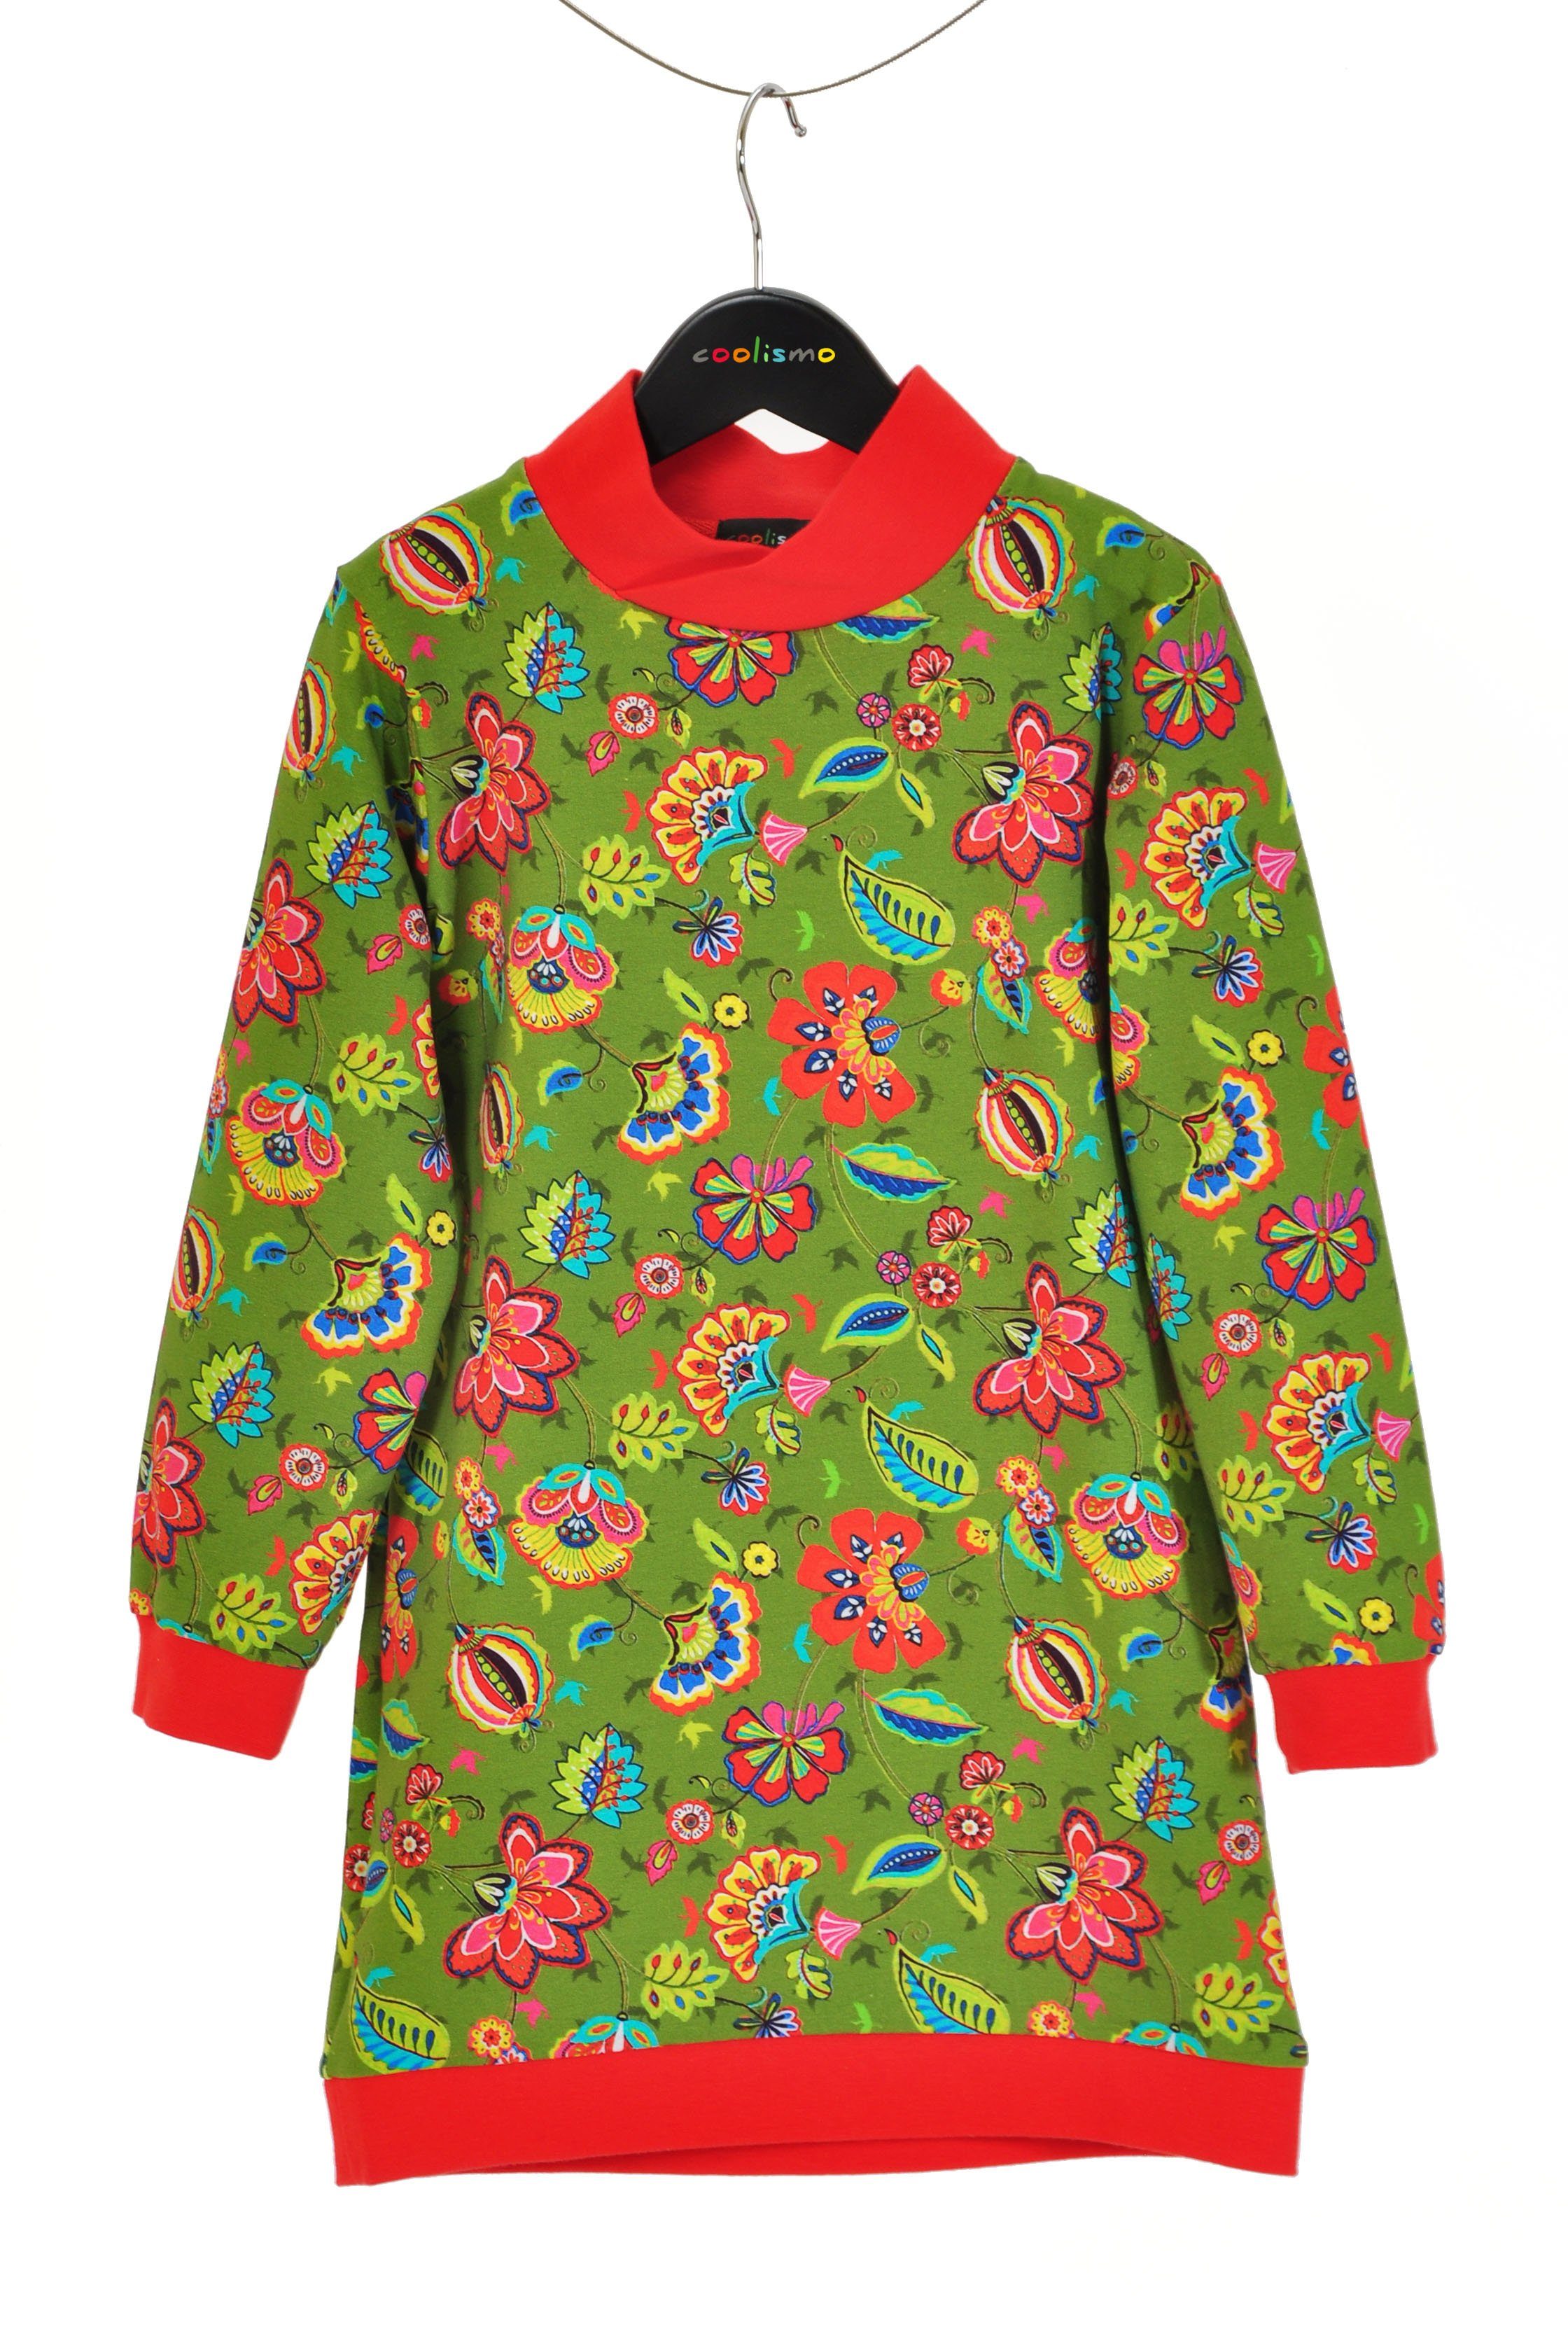 coolismo Sweatkleid Sweatshirt Kleid für coole Motivdruck europäische Mädchen oliv Produktion Blumen mit